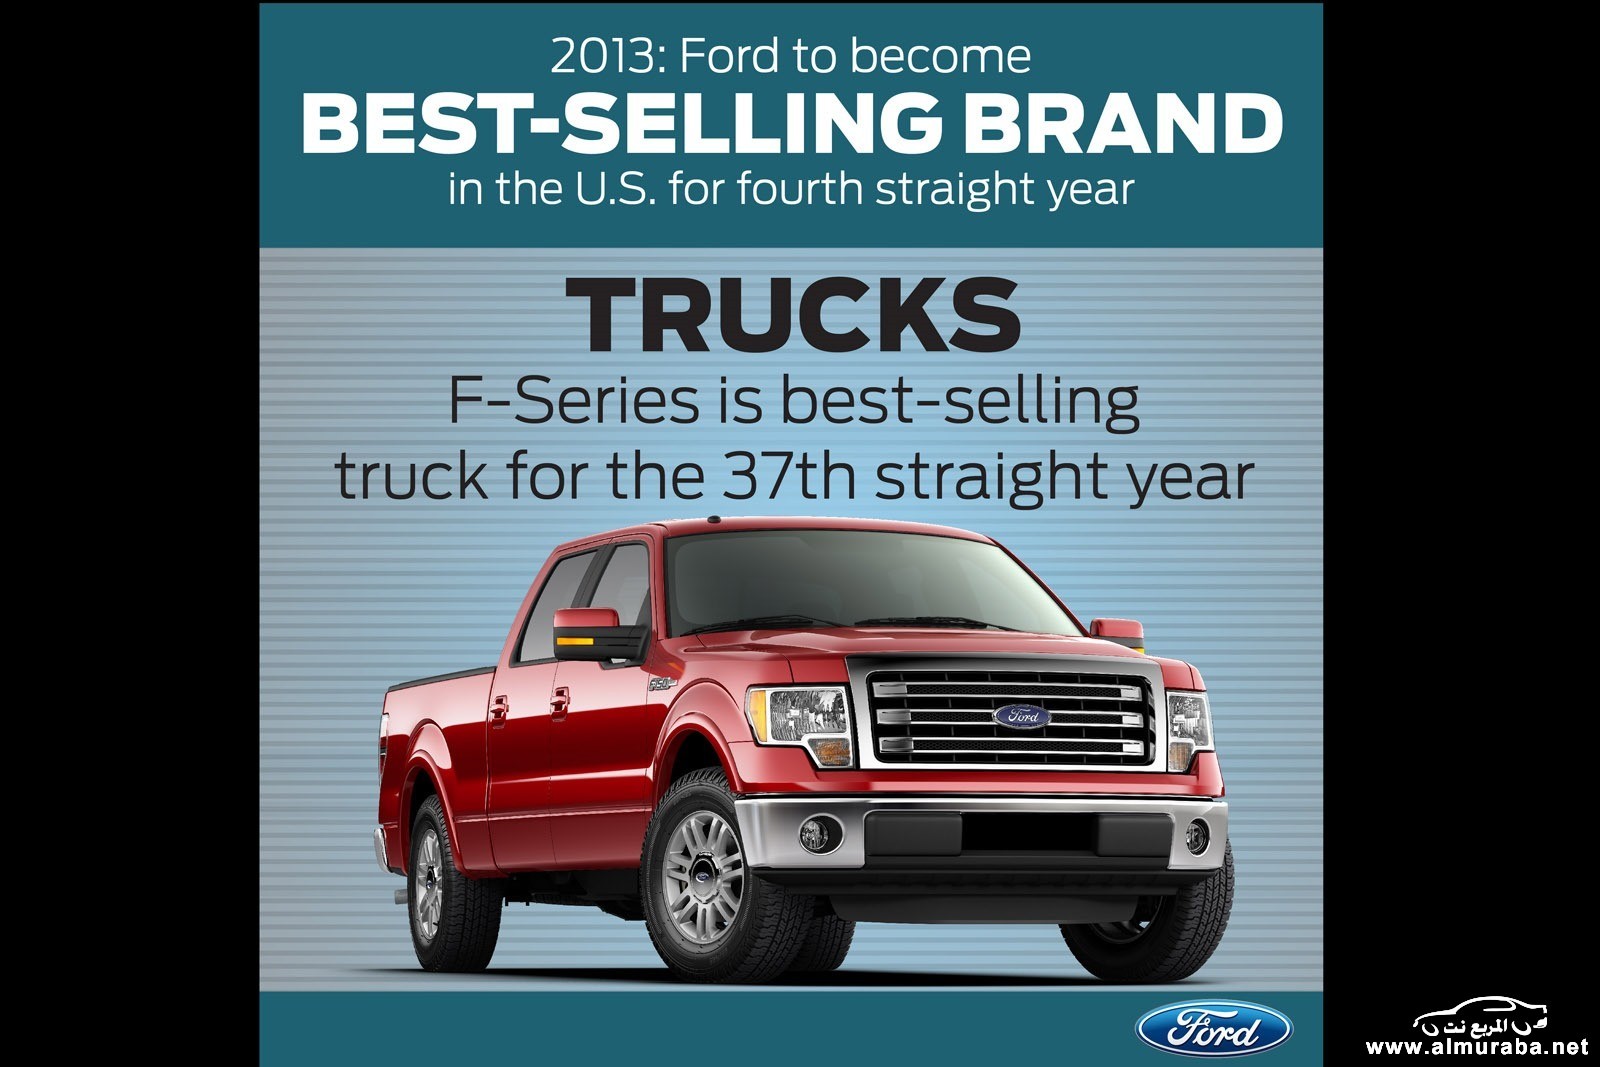 BestSelling_Brand_in_US_trucks[3]